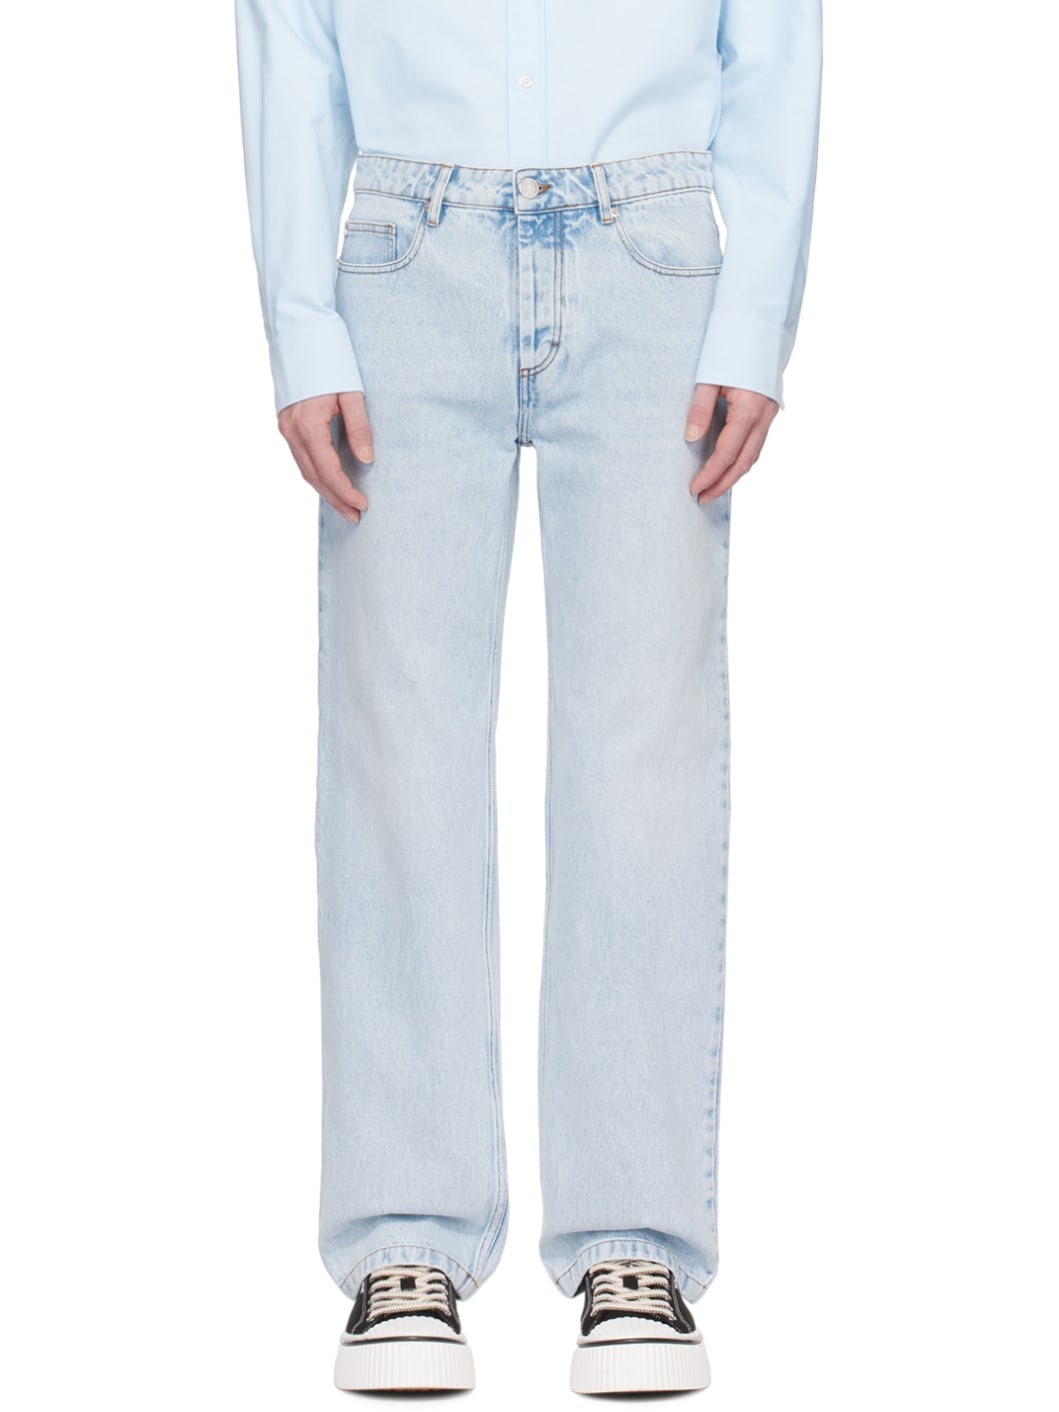 Indigo Classic-Fit Jeans - 1